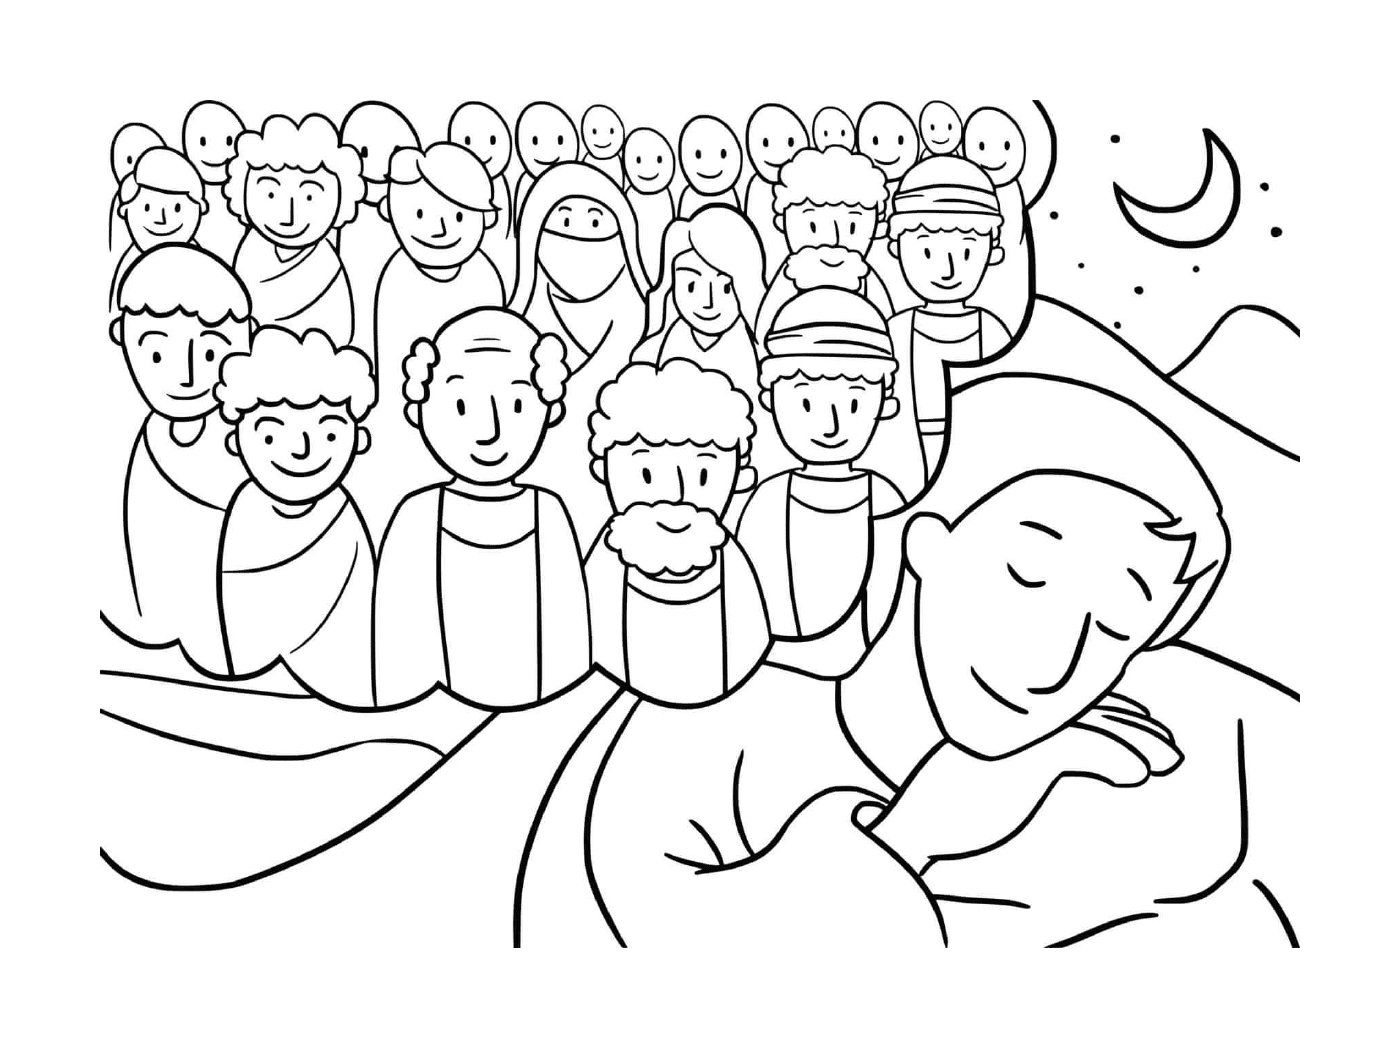  Gruppo di persone riunite intorno a un dormiente 